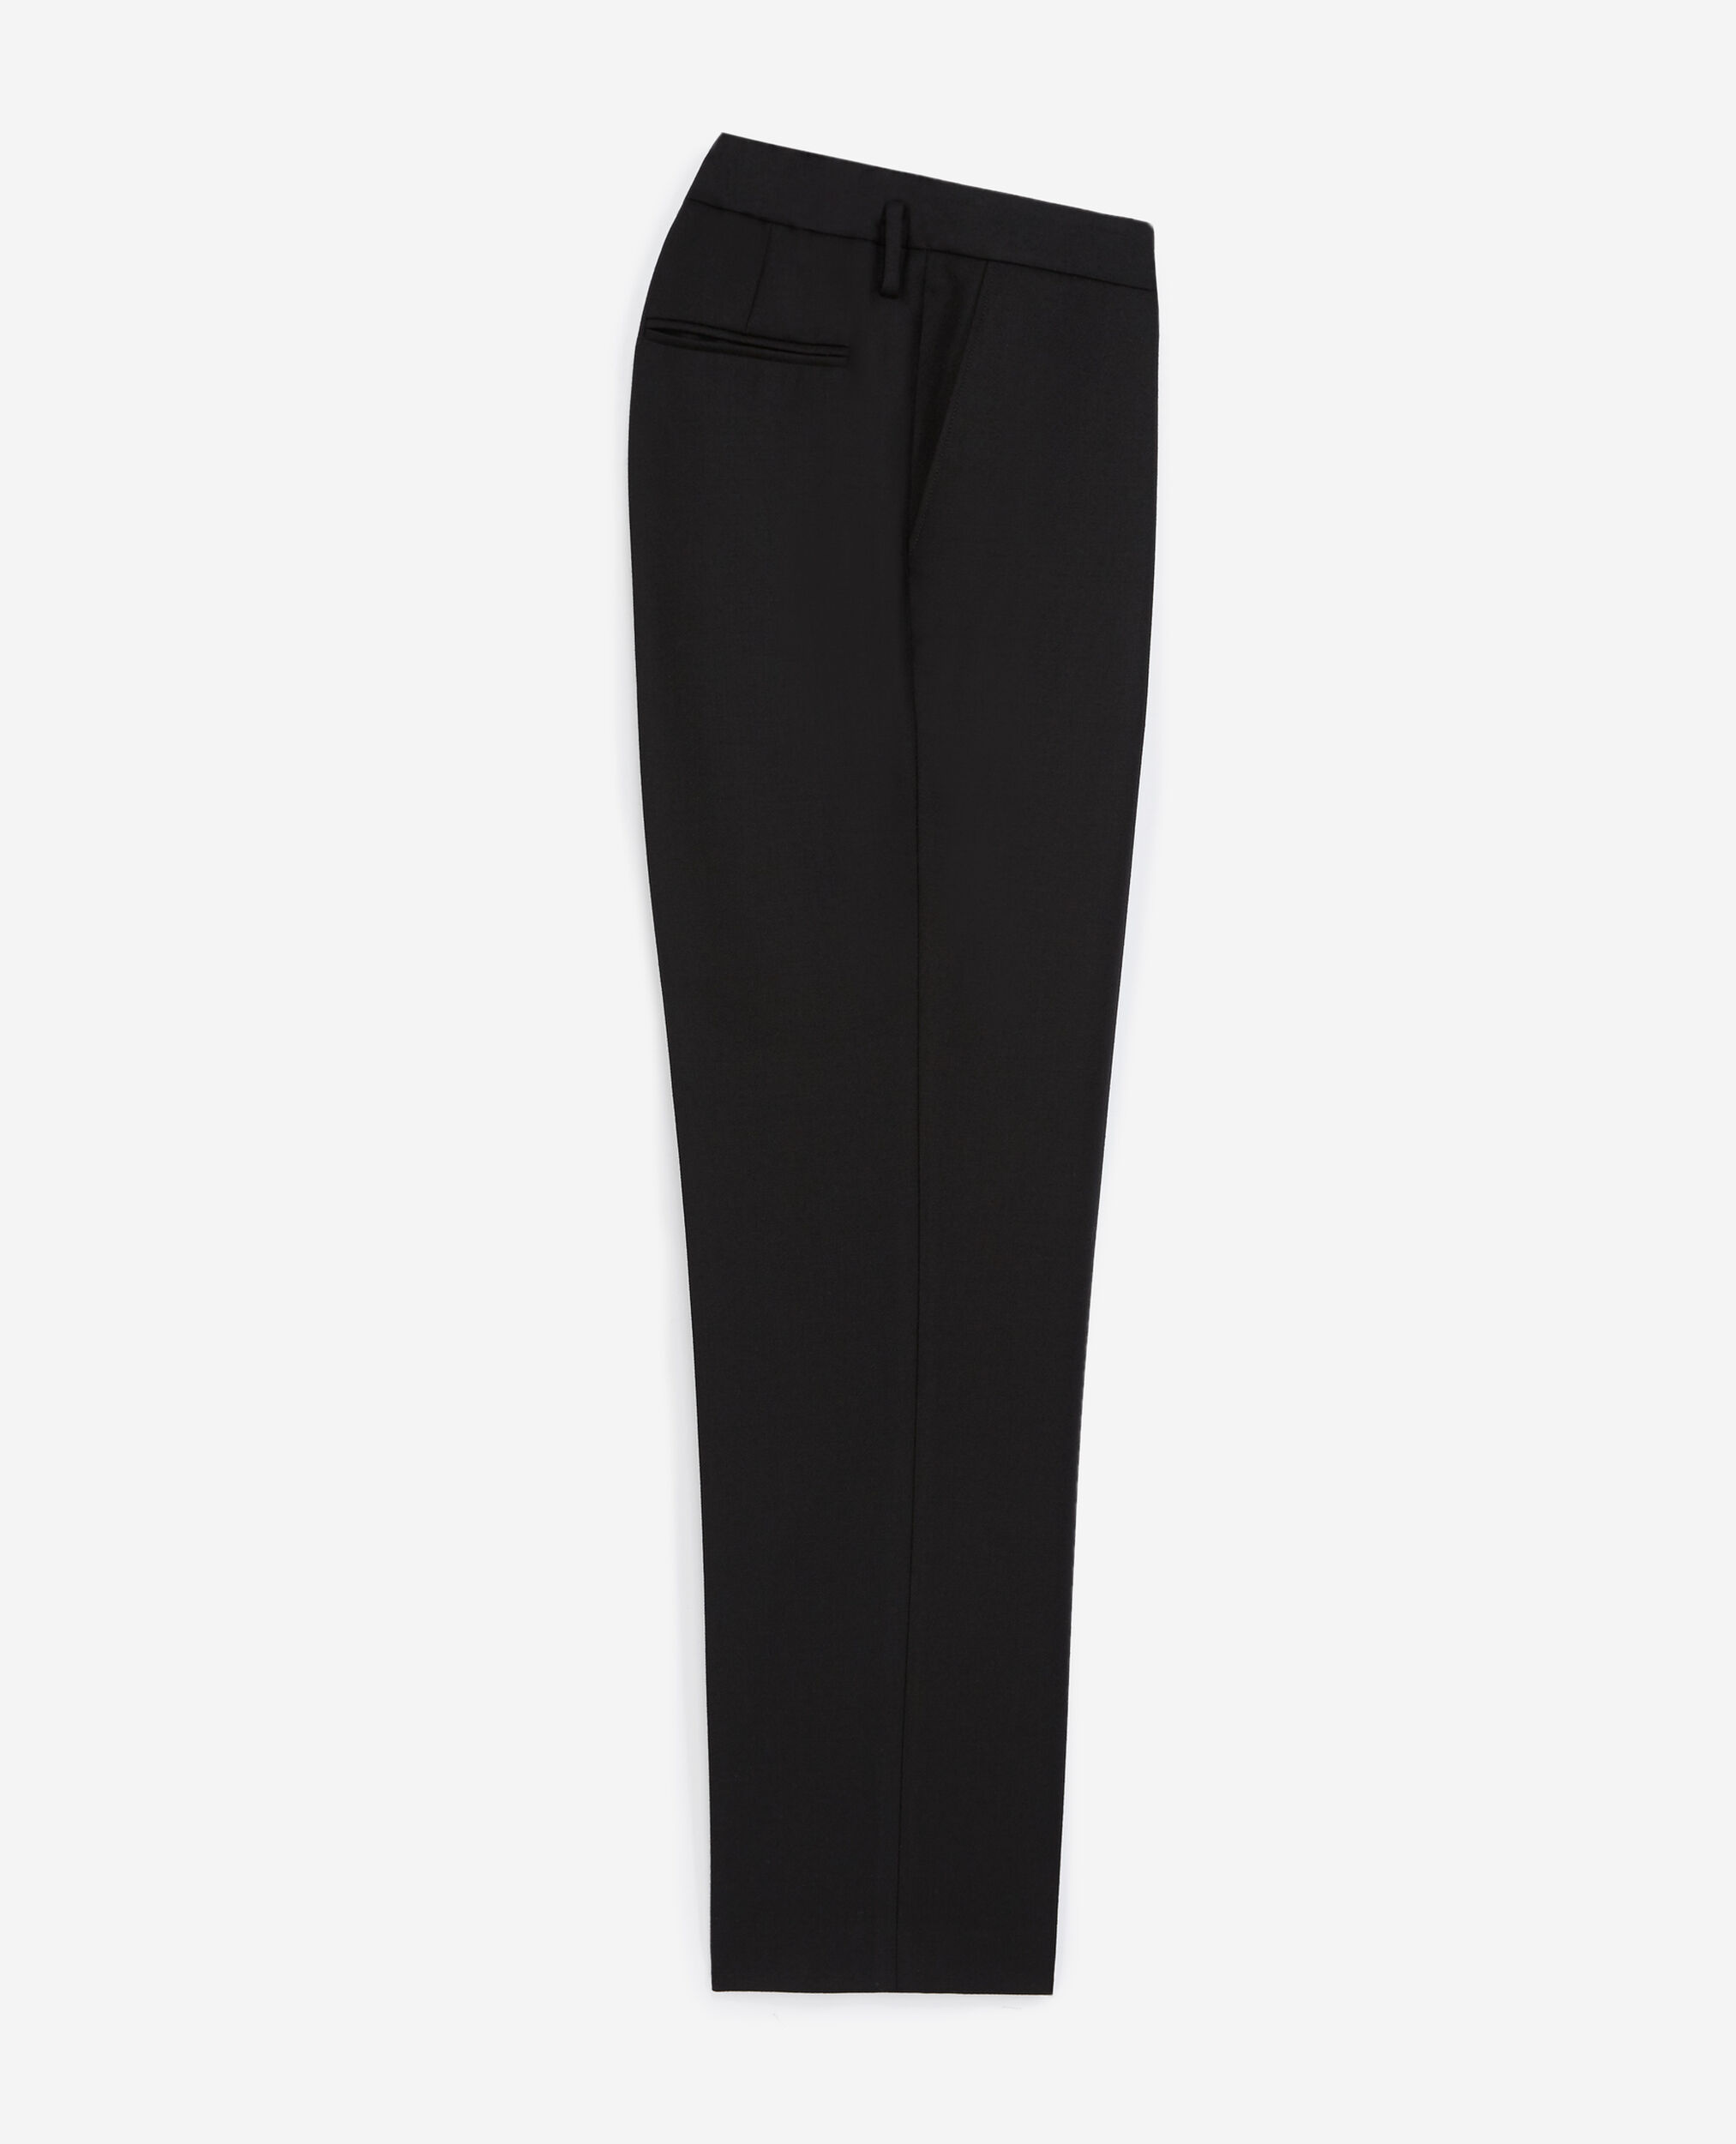 Black pants with removable belt, BLACK, hi-res image number null